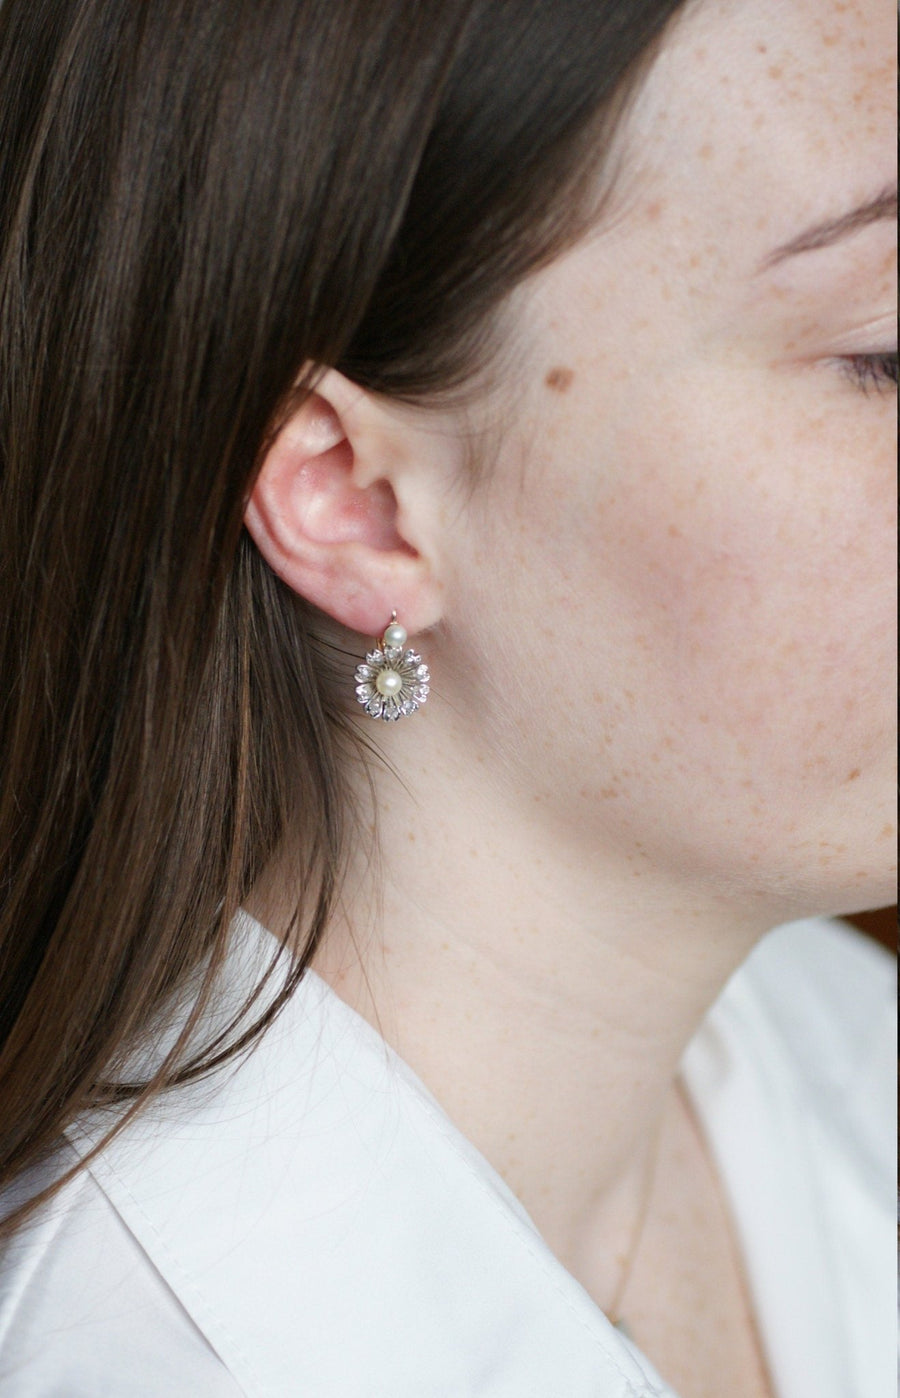 Boucles d'oreilles fleurs or, perles, diamants - Galerie Pénélope